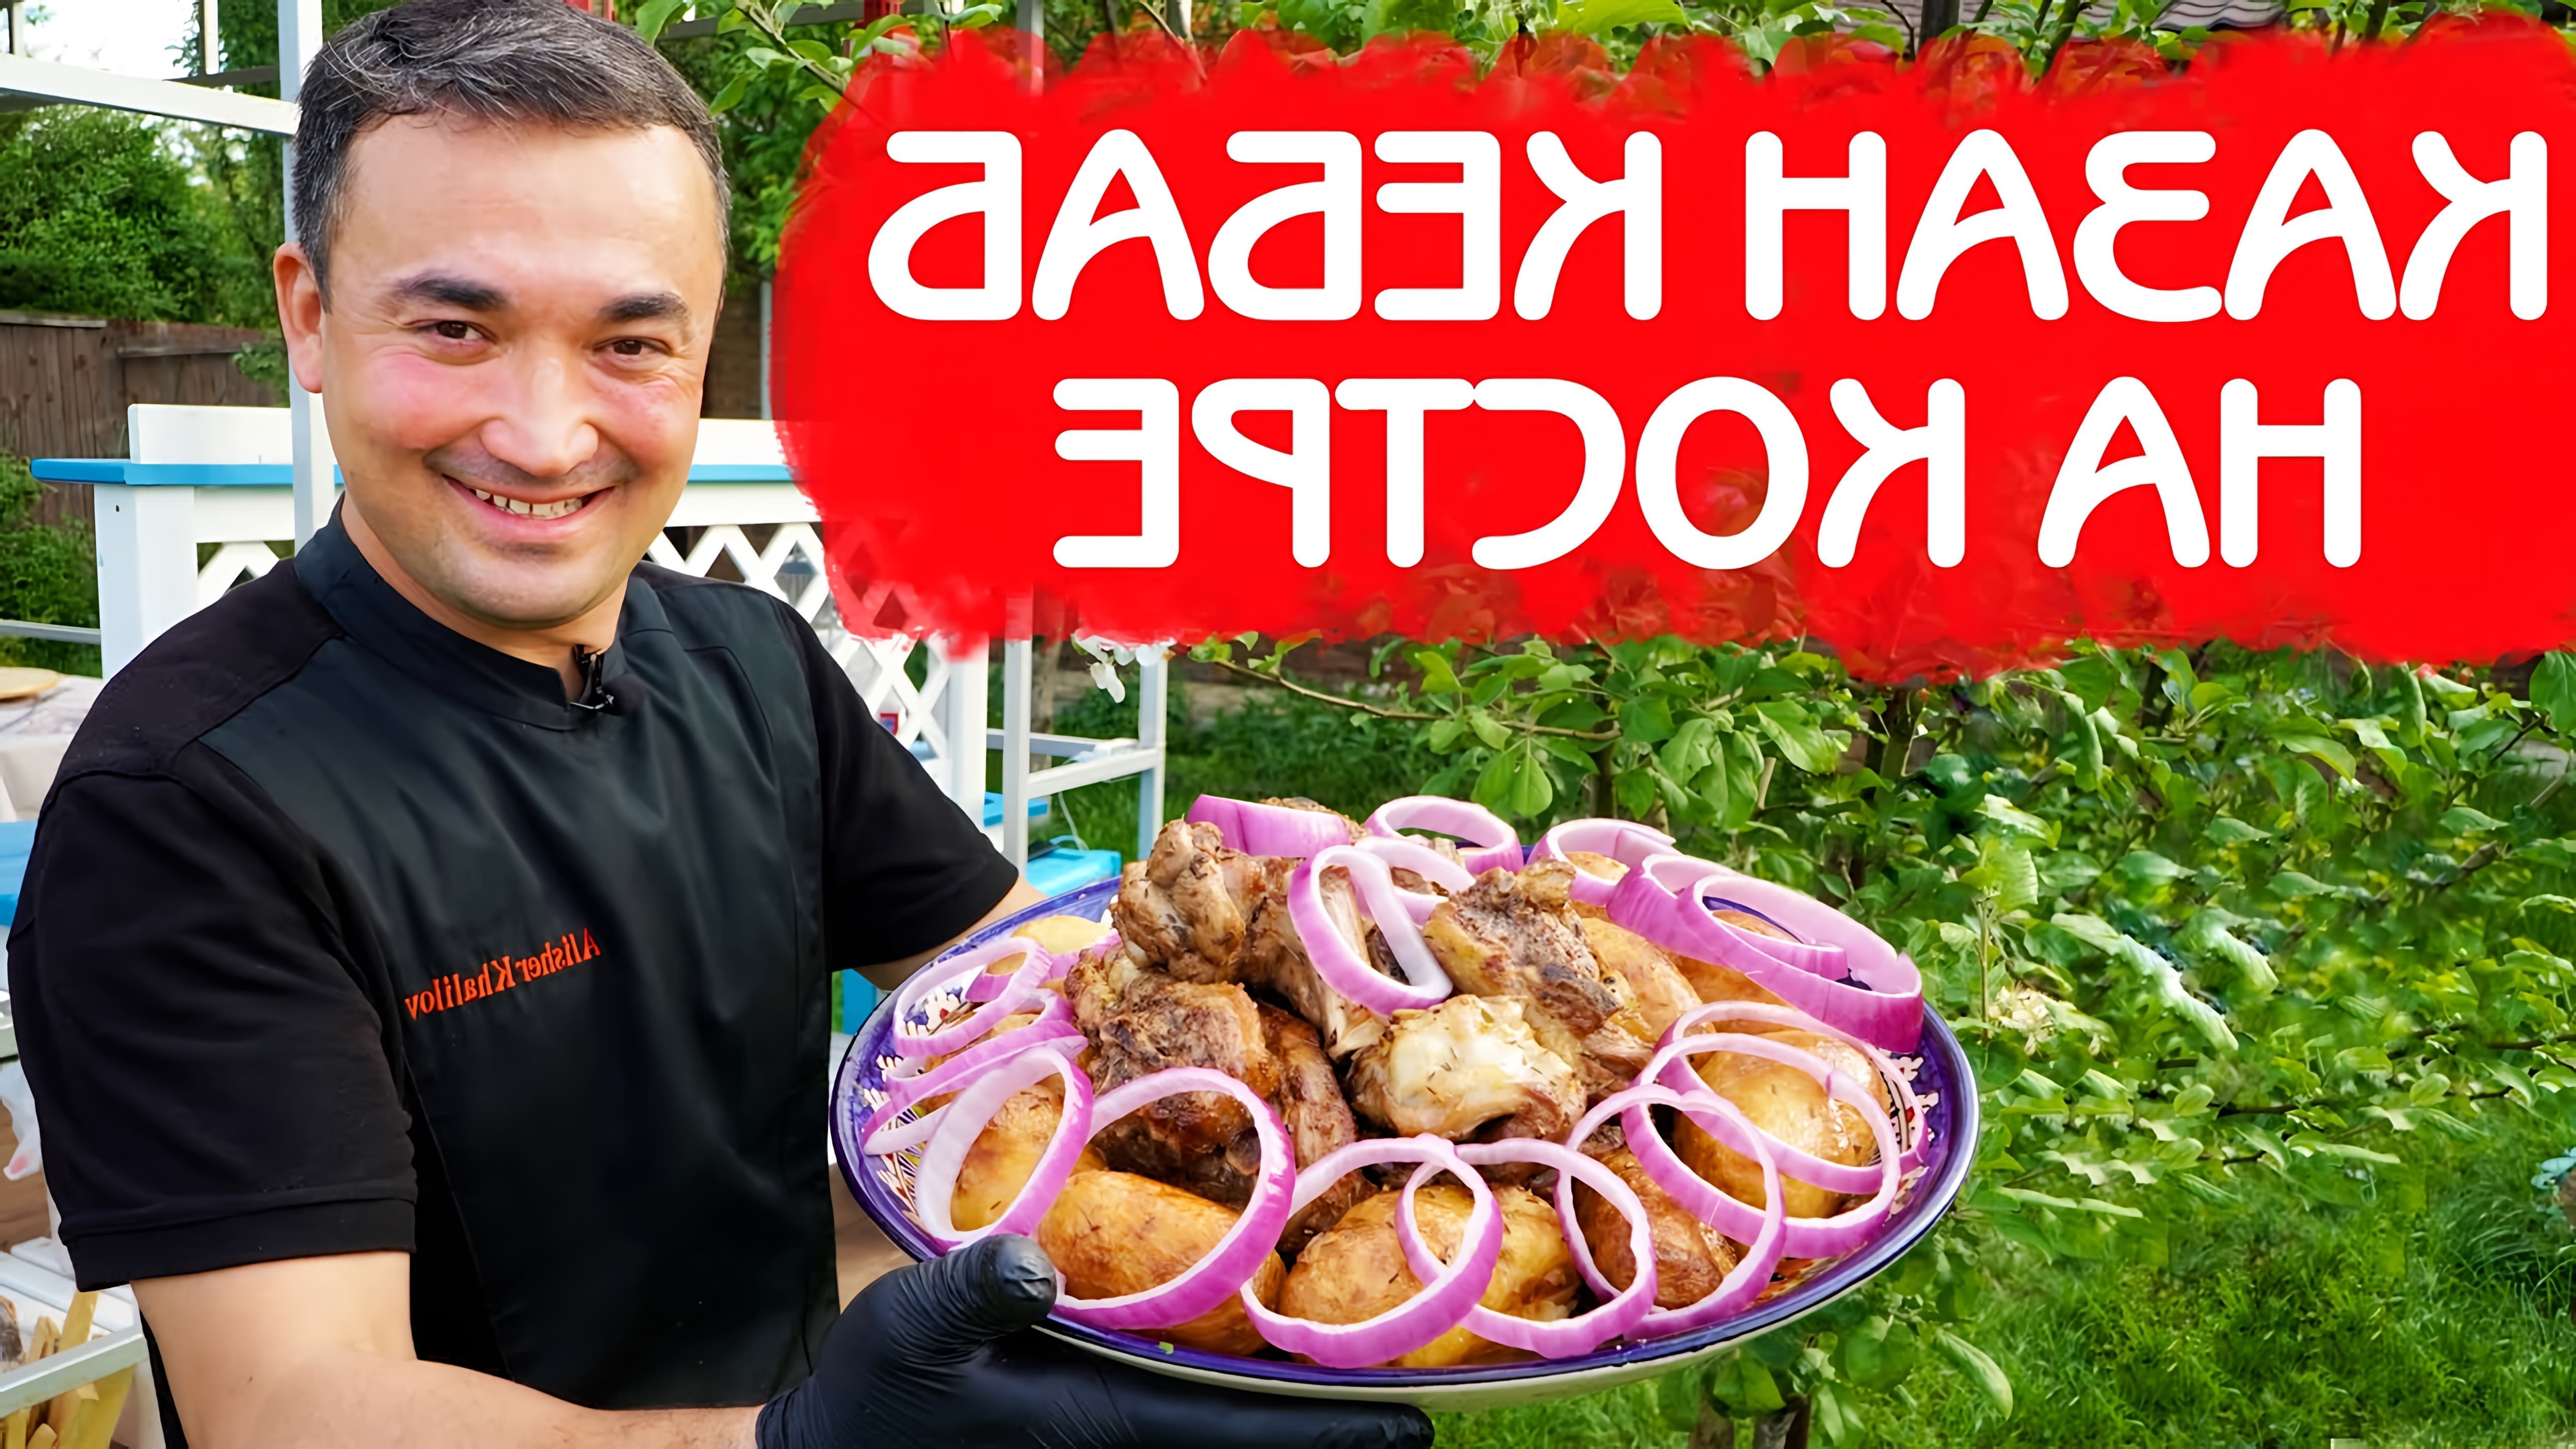 В этом видео демонстрируется процесс приготовления казан-кaбаба с бараниной и картошкой